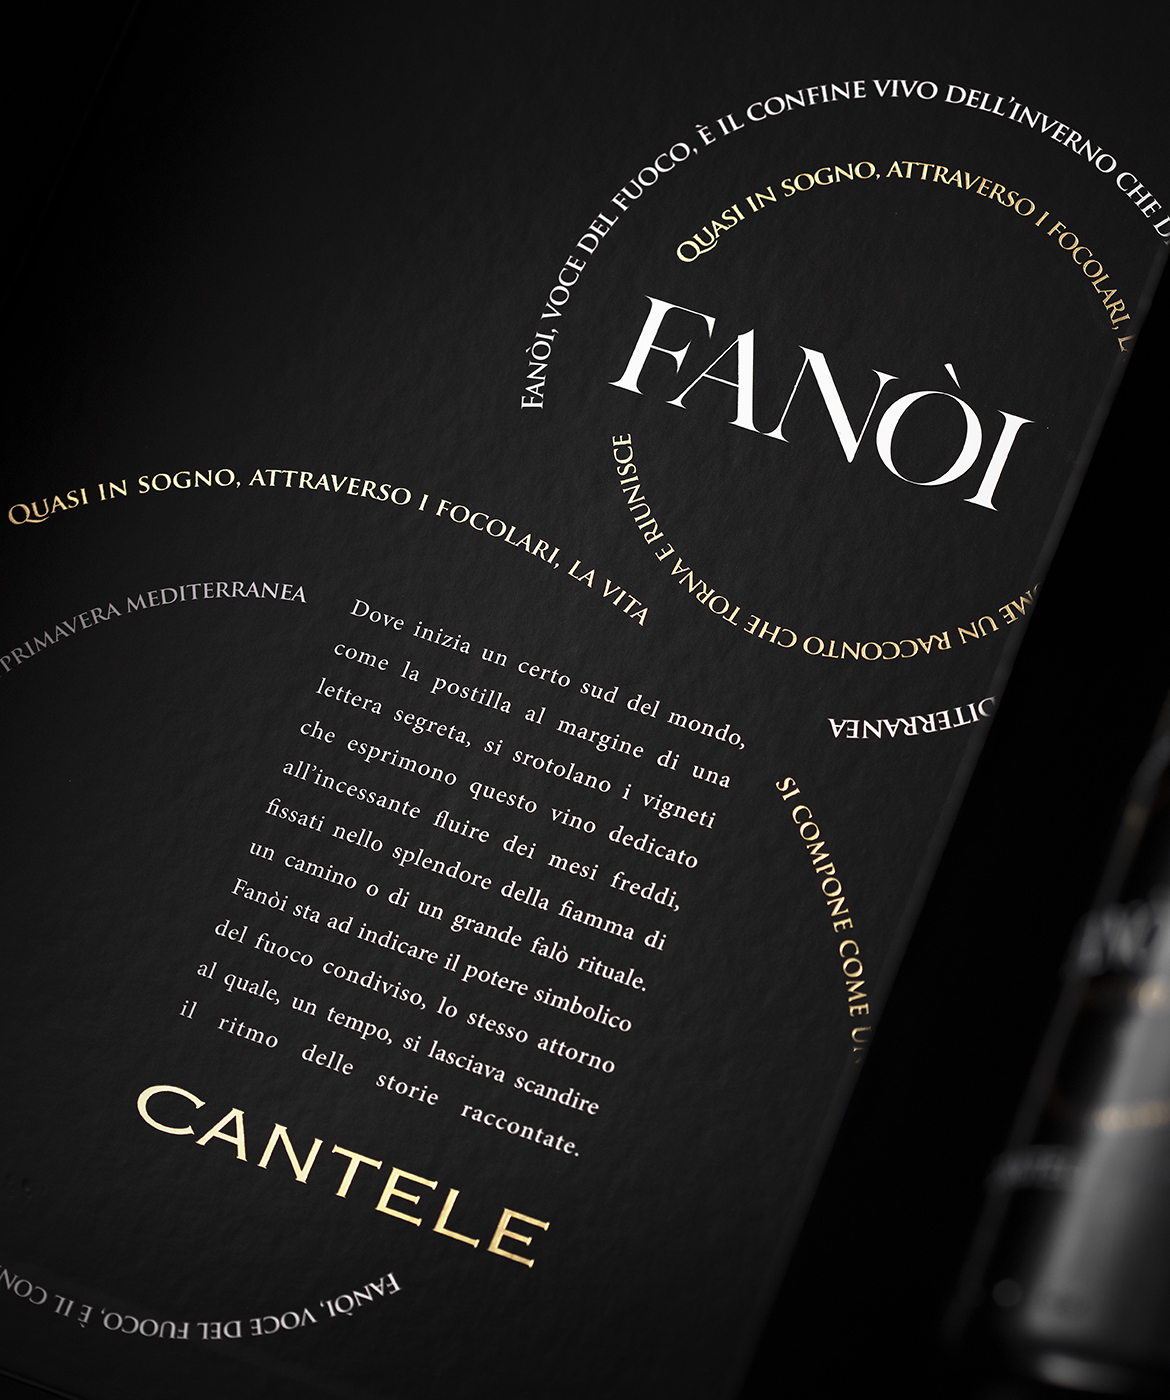 Rượu vang cantele fanòi-1